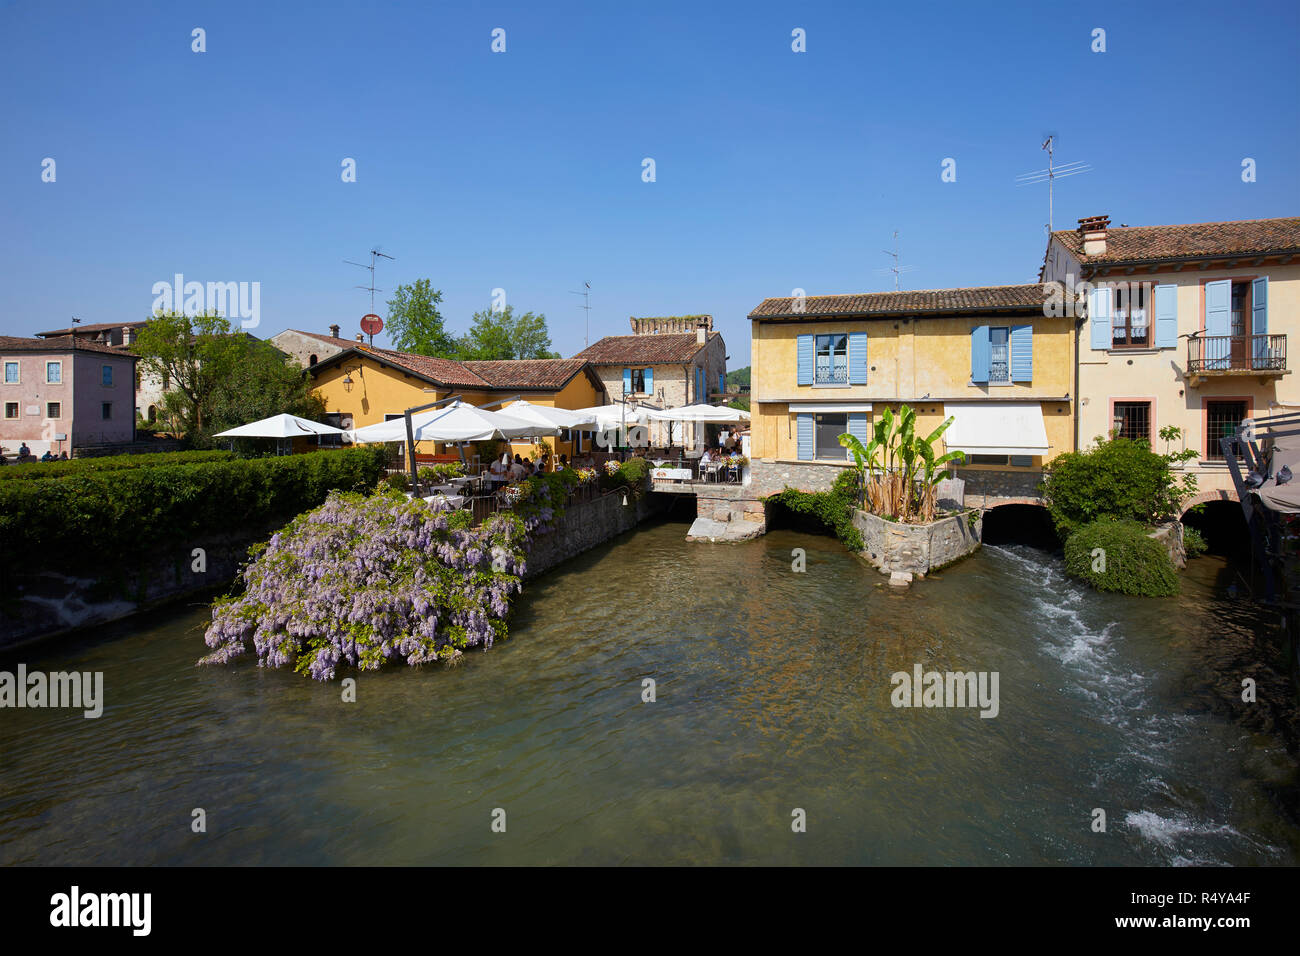 Visconteo bridge in Borghetto of Valeggio sul Mincio, Verona province, Italy Stock Photo